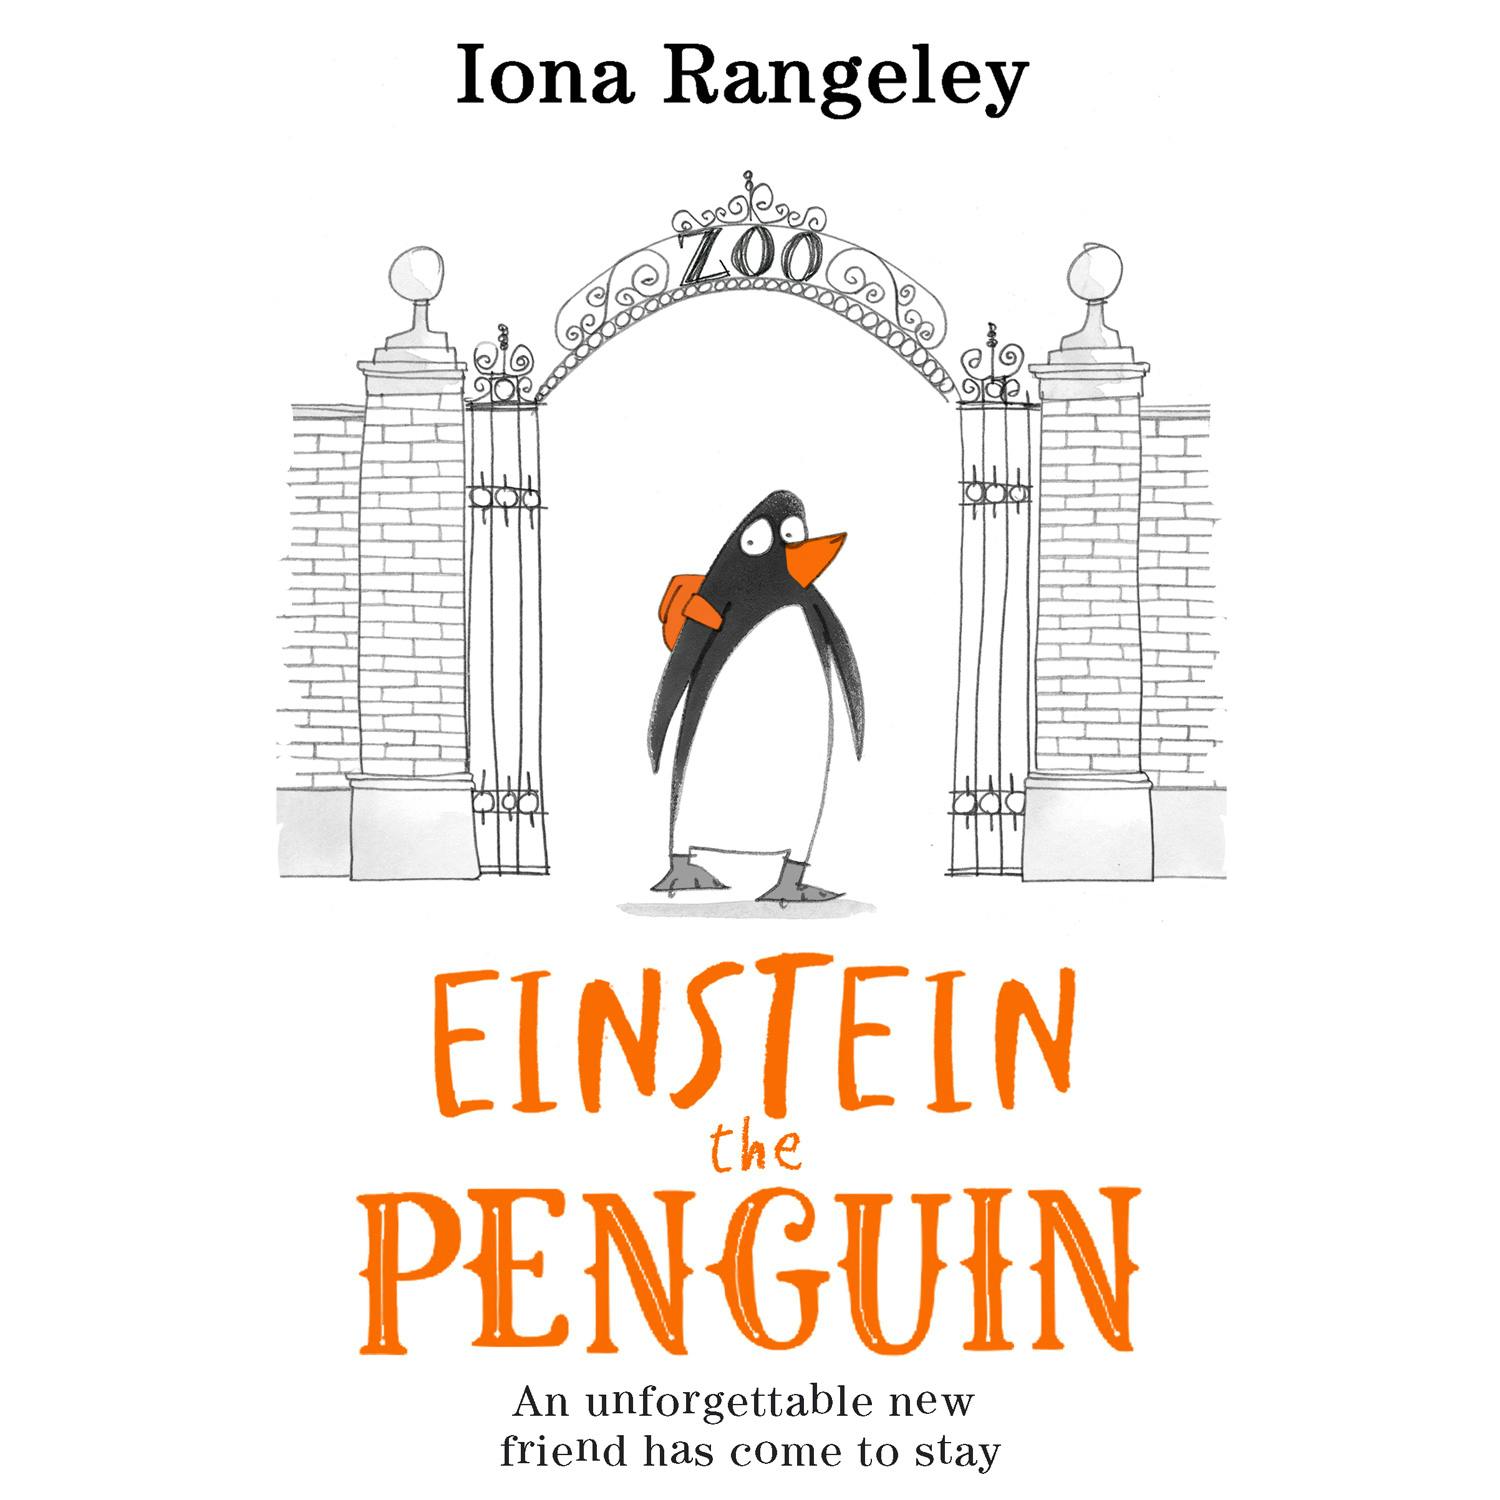 Einstein the Penguin - Iona Rangeley